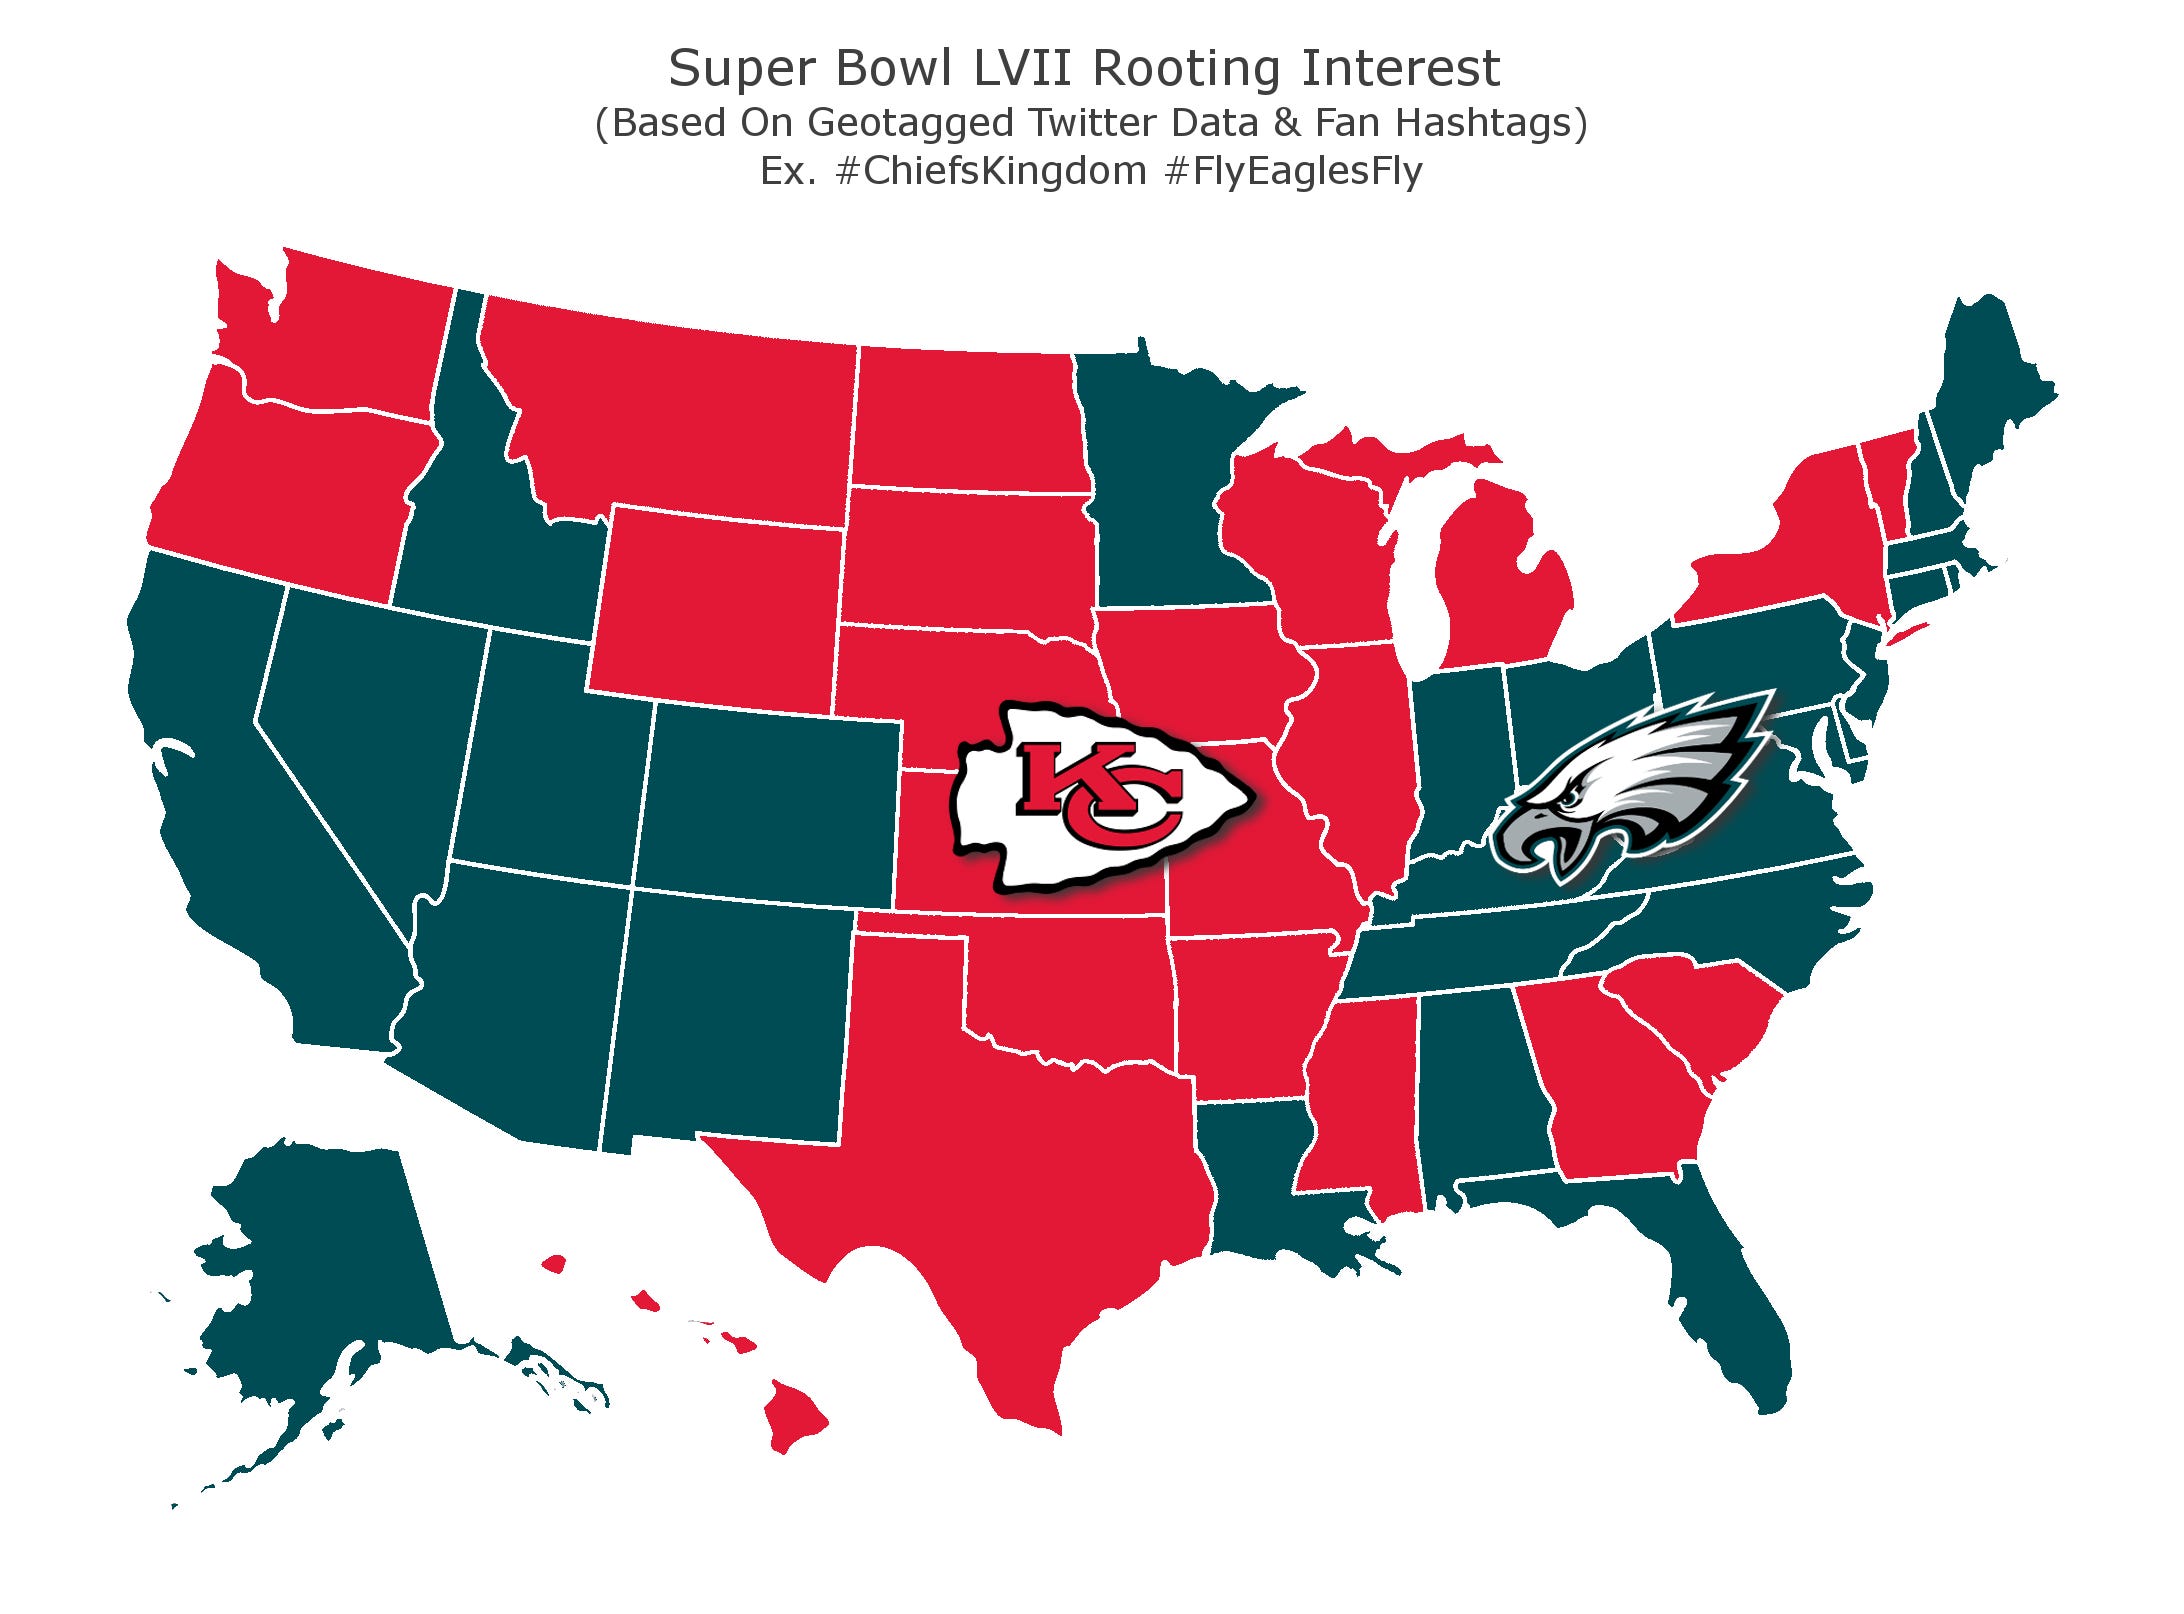 Super Bowl LVII weckt Interesse nach Bundesstaaten.